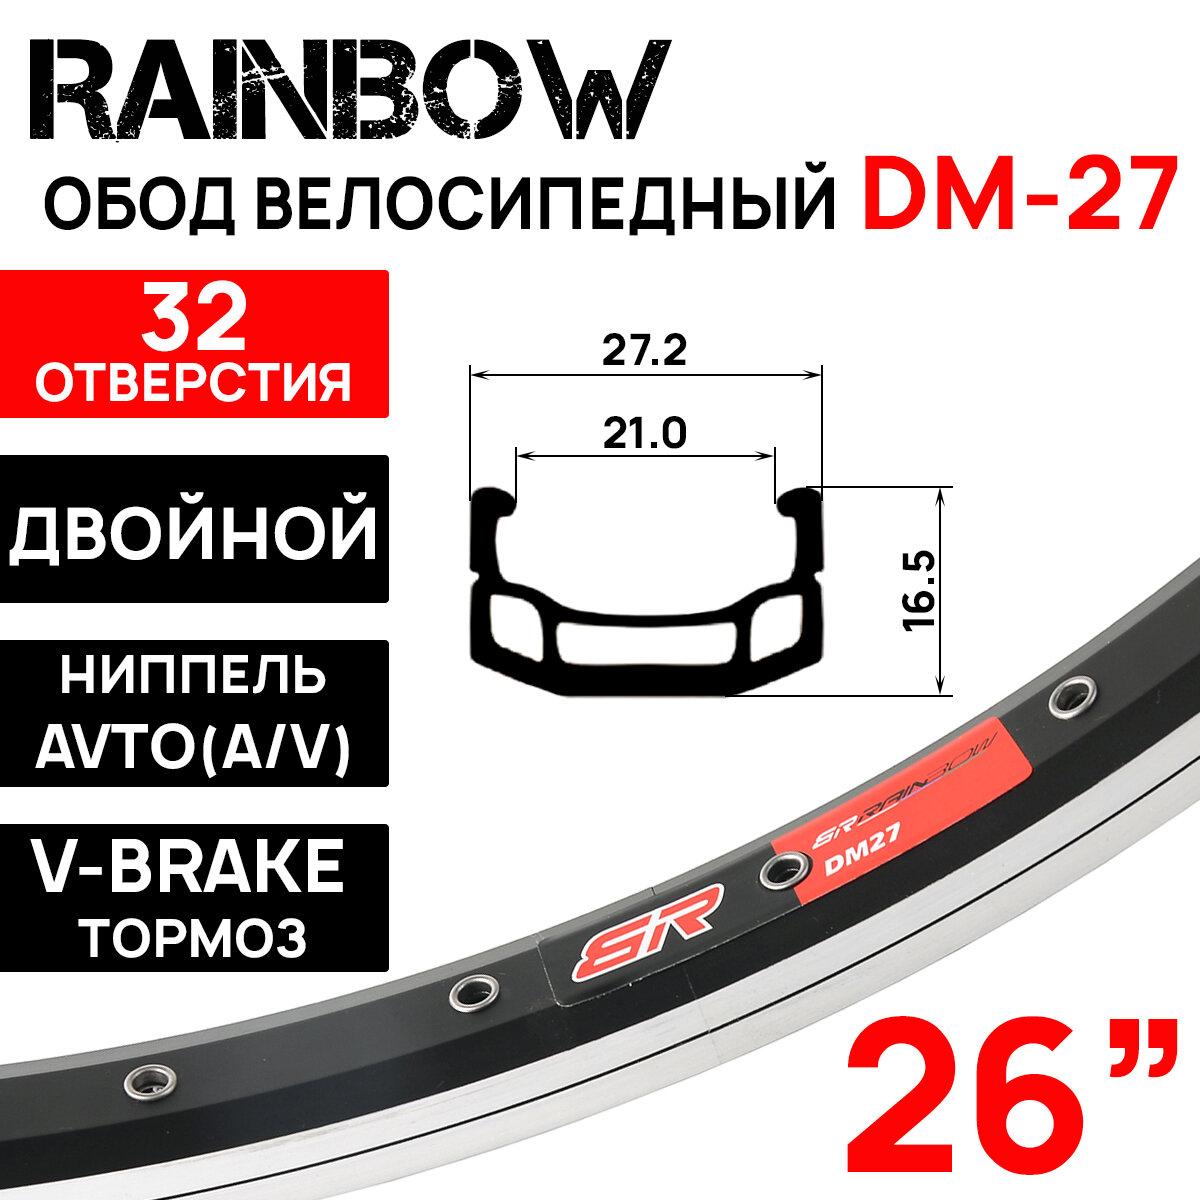 Обод двойной Rainbow DM-27 26" (559х21С), 32 отверстия, ниппель: A/V (авто), черно-серебристый